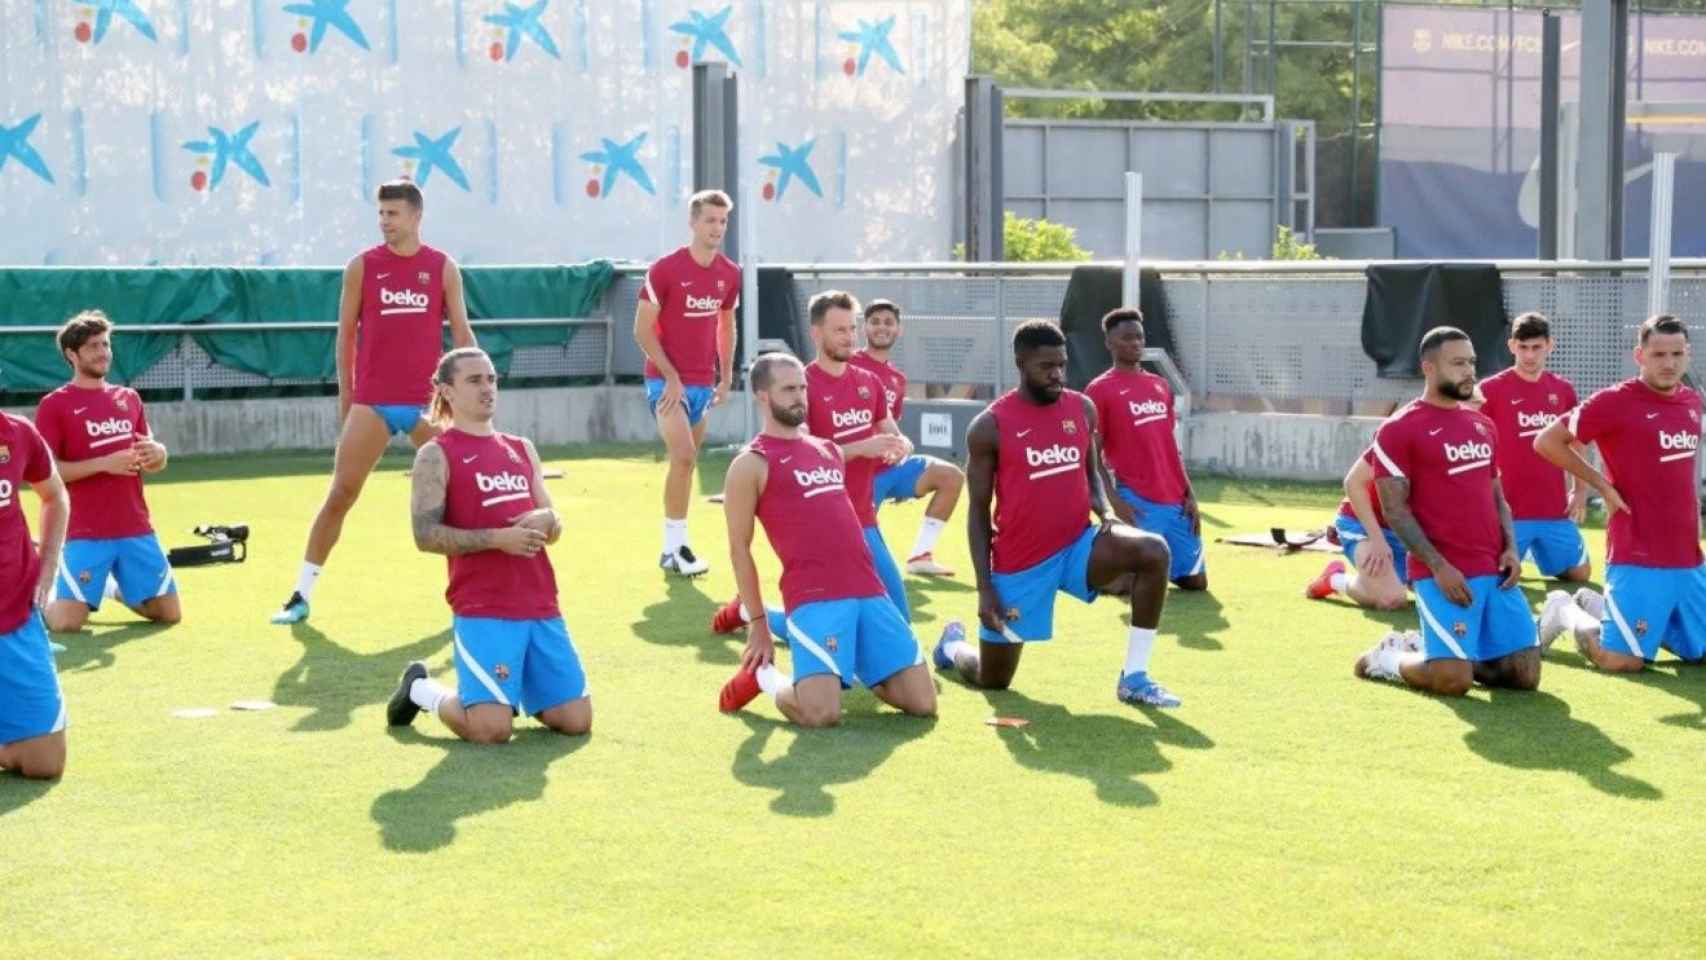 Los jugadores del Barça haciendo ejercicios mientras se les busca salida / FC Barcelona